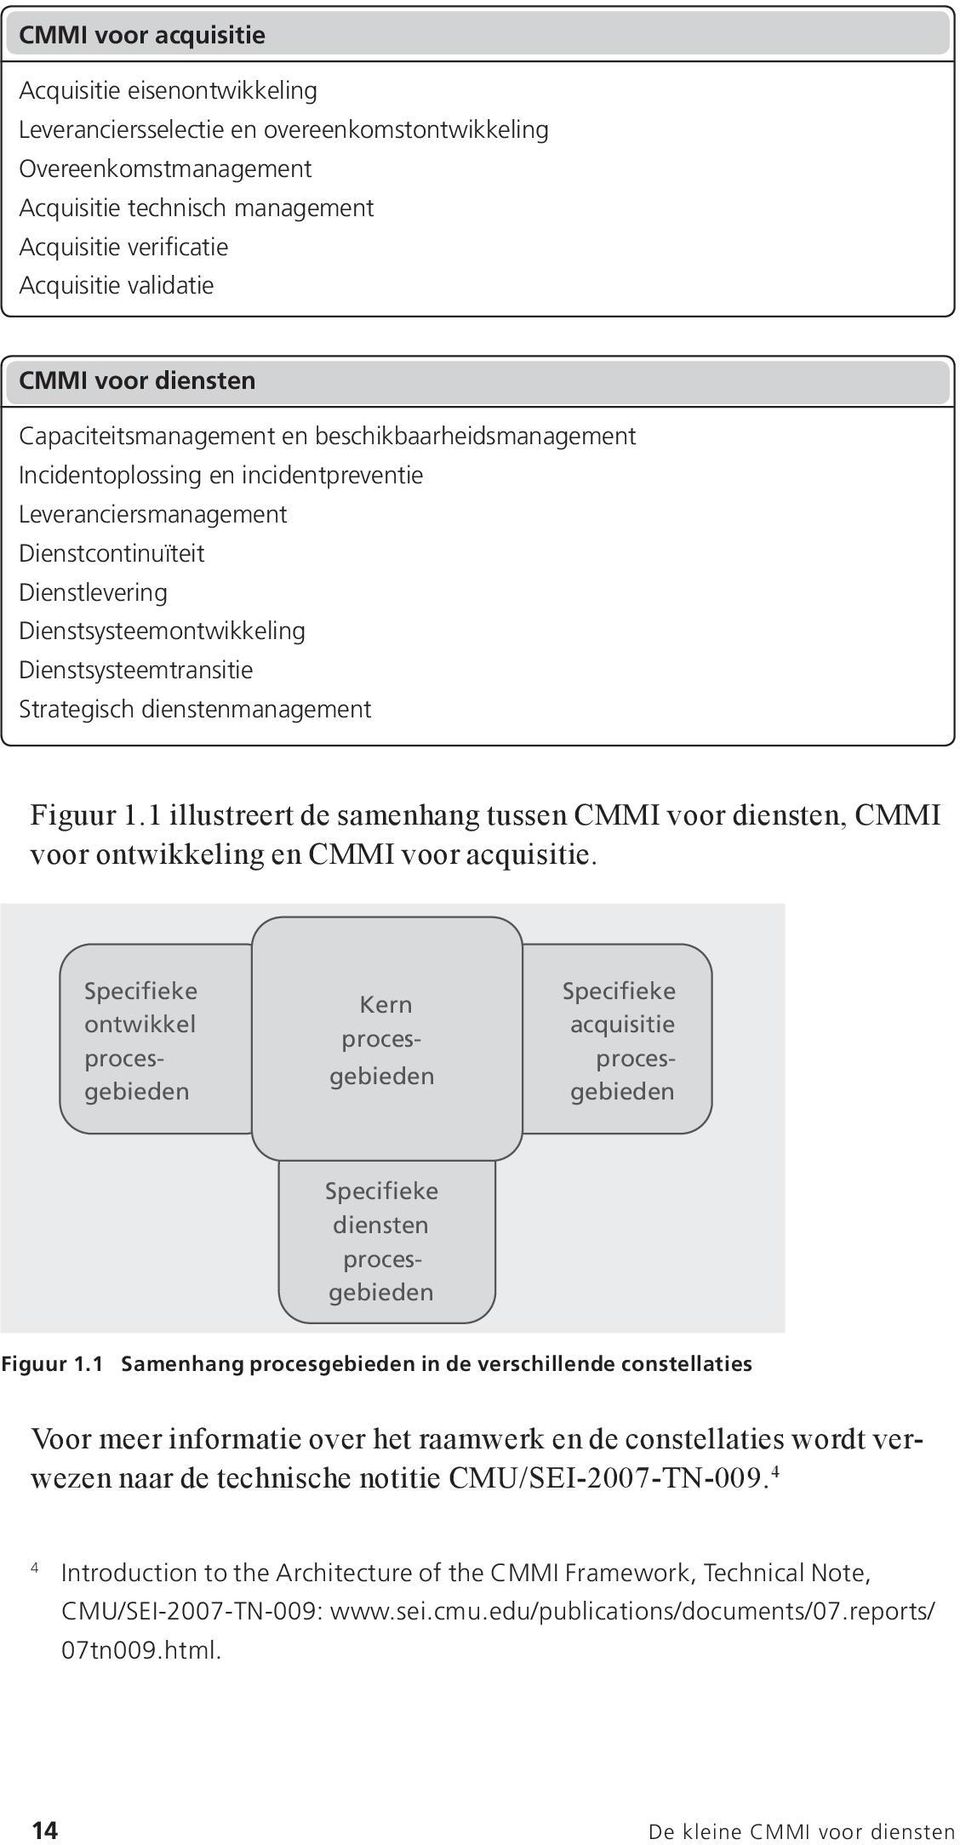 Dienstsysteemtransitie Strategisch dienstenmanagement Figuur 1.1 illustreert de samenhang tussen CMMI voor diensten, CMMI voor ontwikkeling en CMMI voor acquisitie.